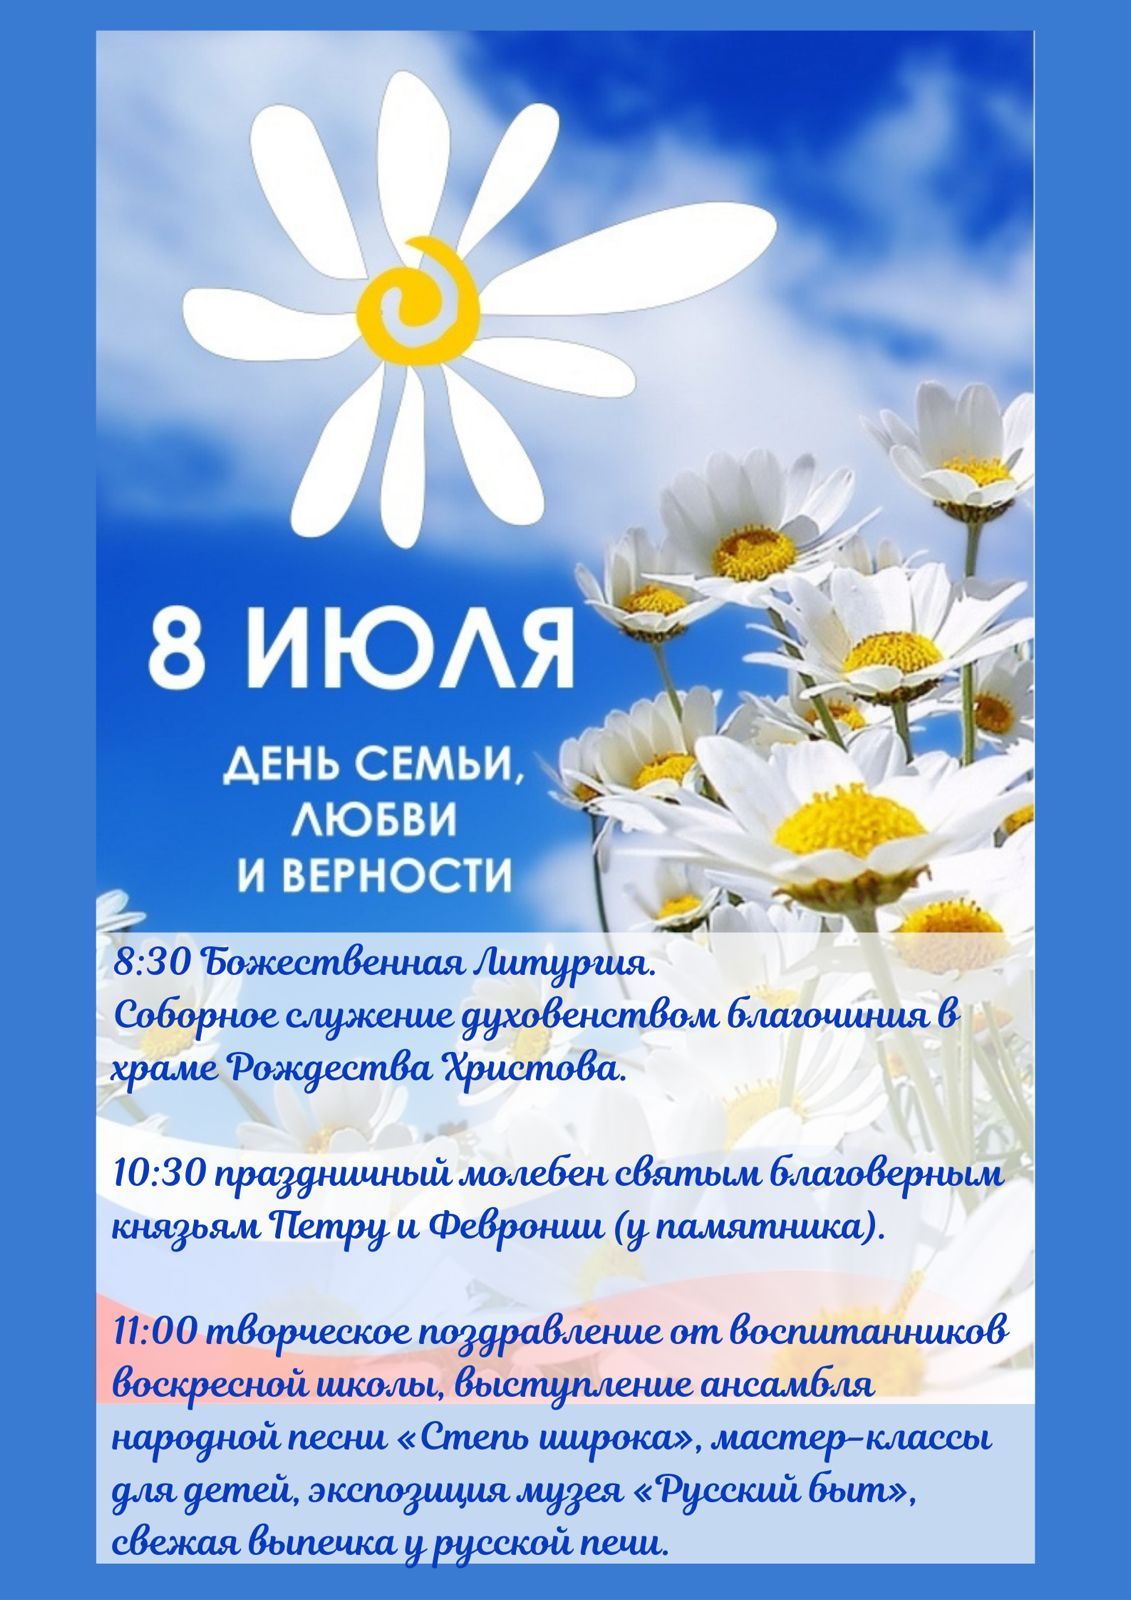 В Обнинске пройдет праздник посвященный Дню семьи, любви и верности